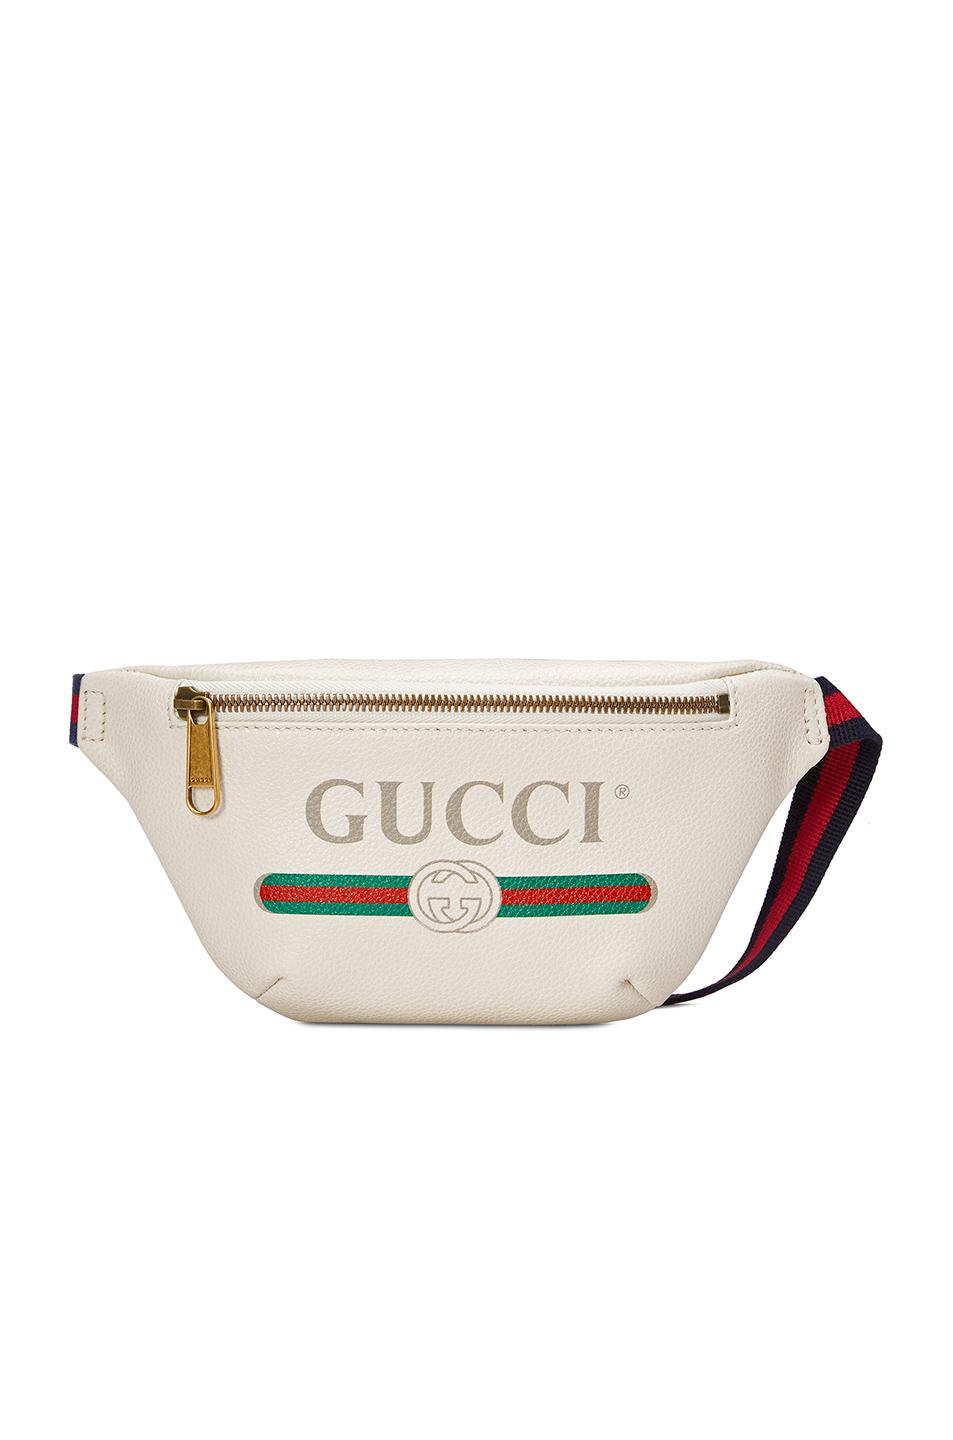 gucci belt bag print leather